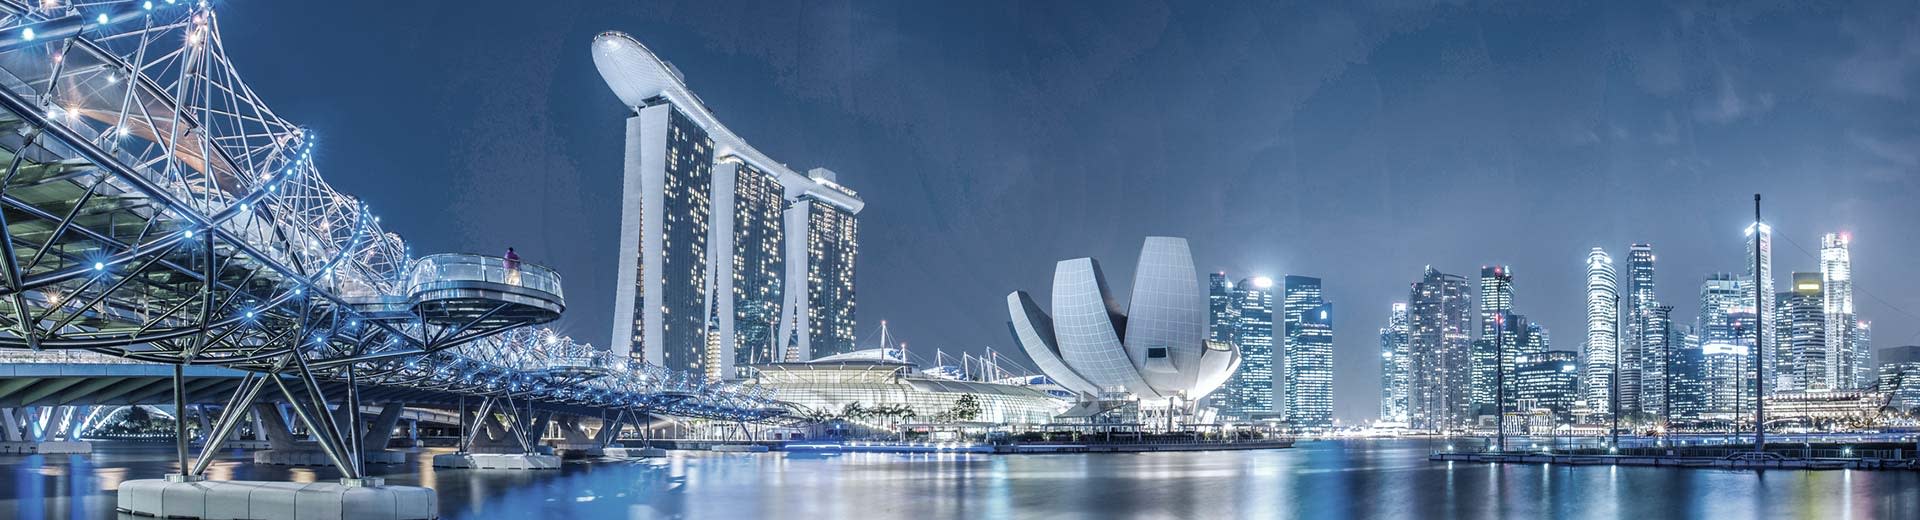 Die moderne Metropole von Singapur nachts mit enormen Wolkenkratzern und Brücken, die den Himmel beleuchten.